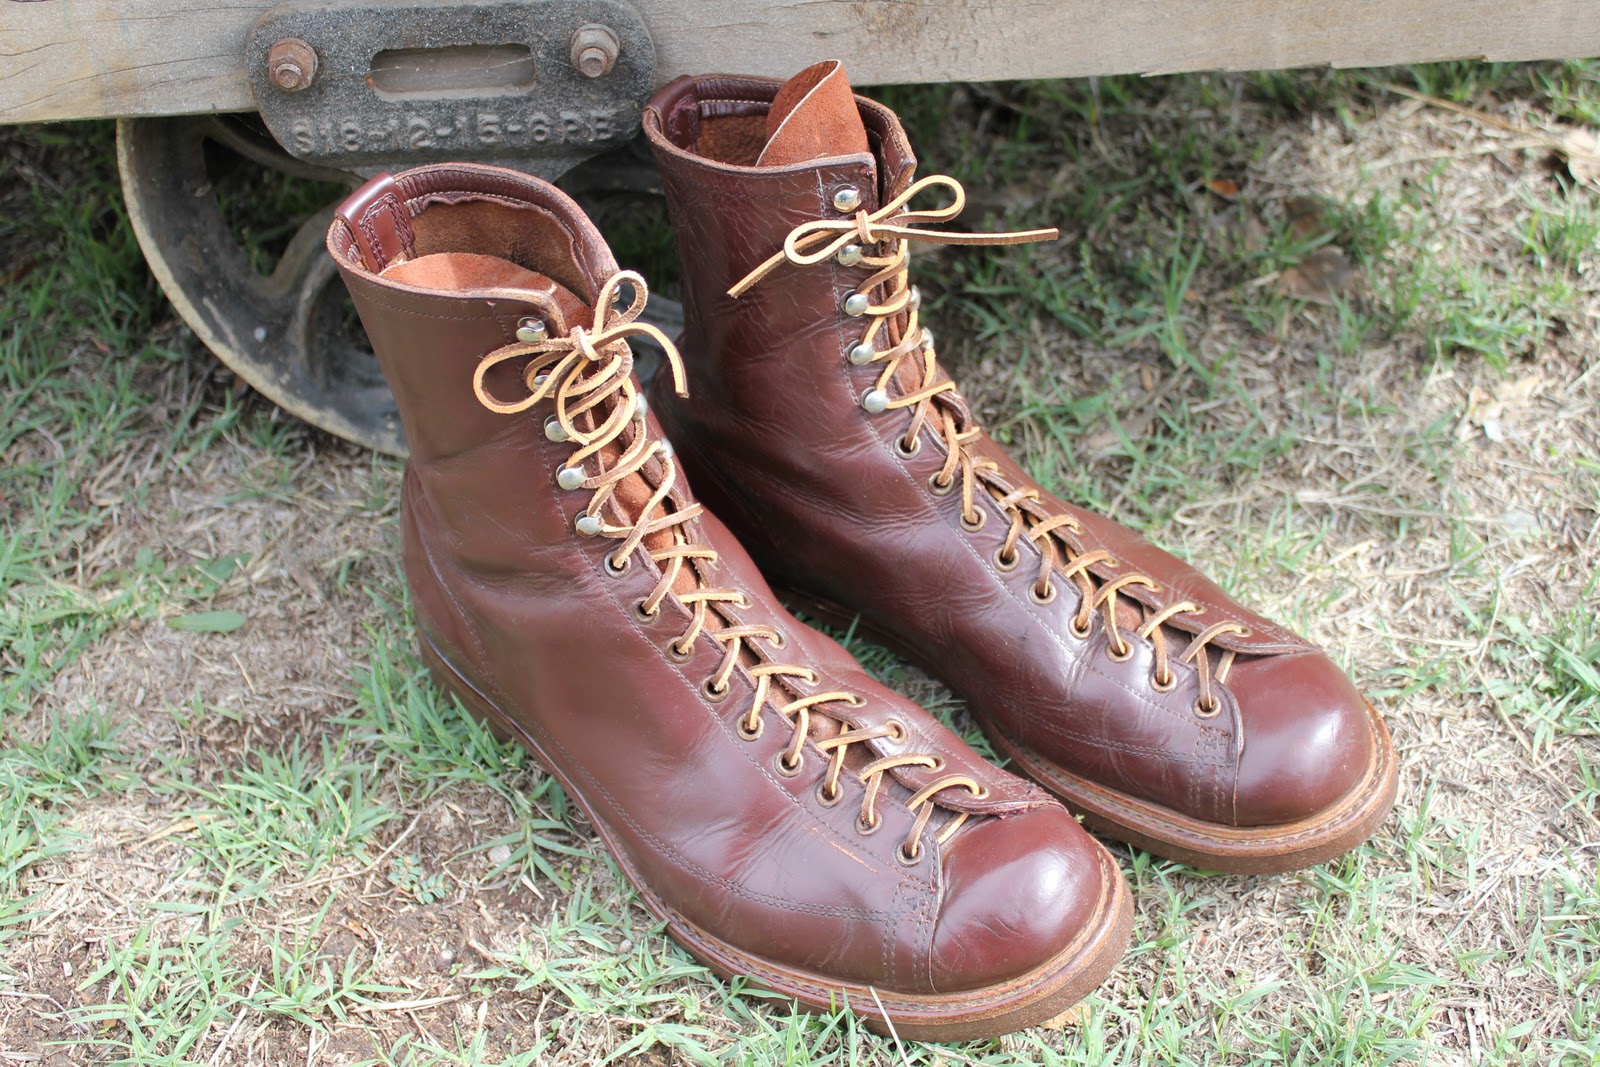 Endicott Johnson Boots | vlr.eng.br